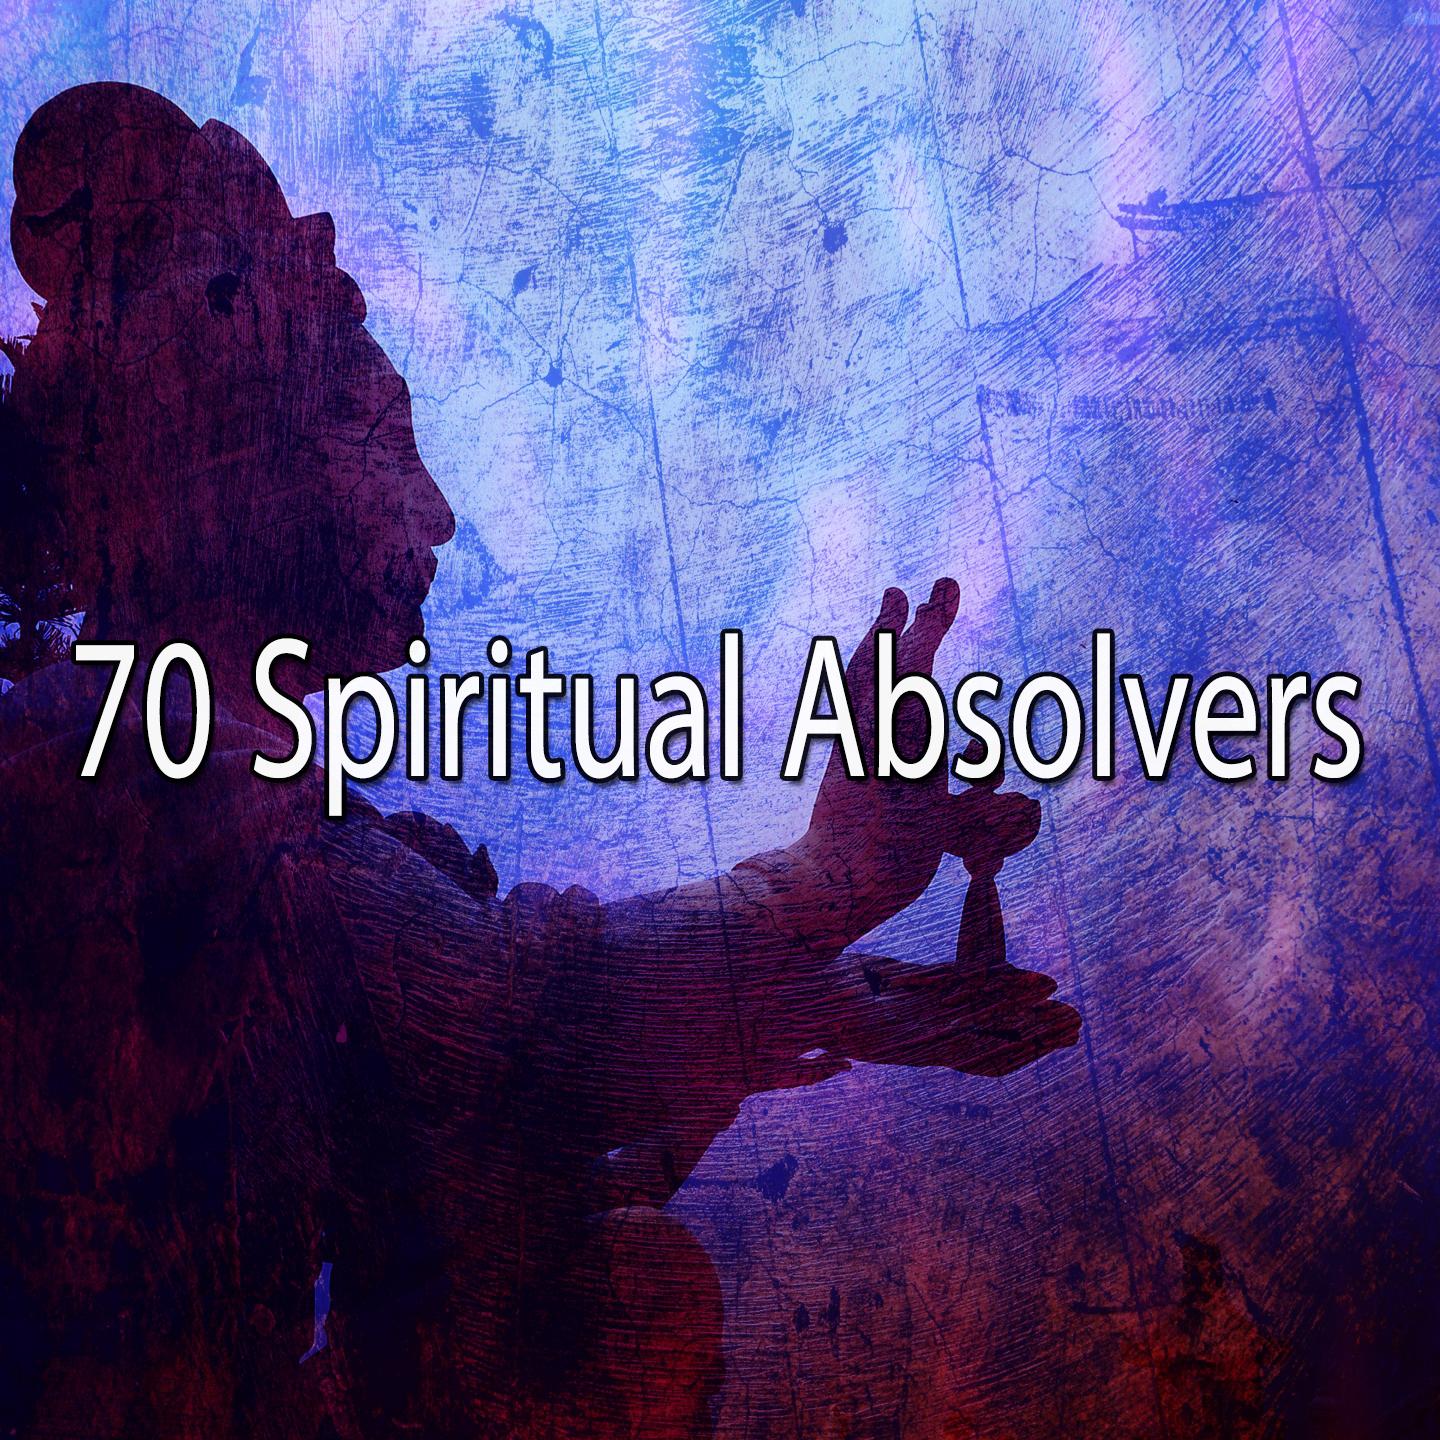 70 Spiritual Absolvers